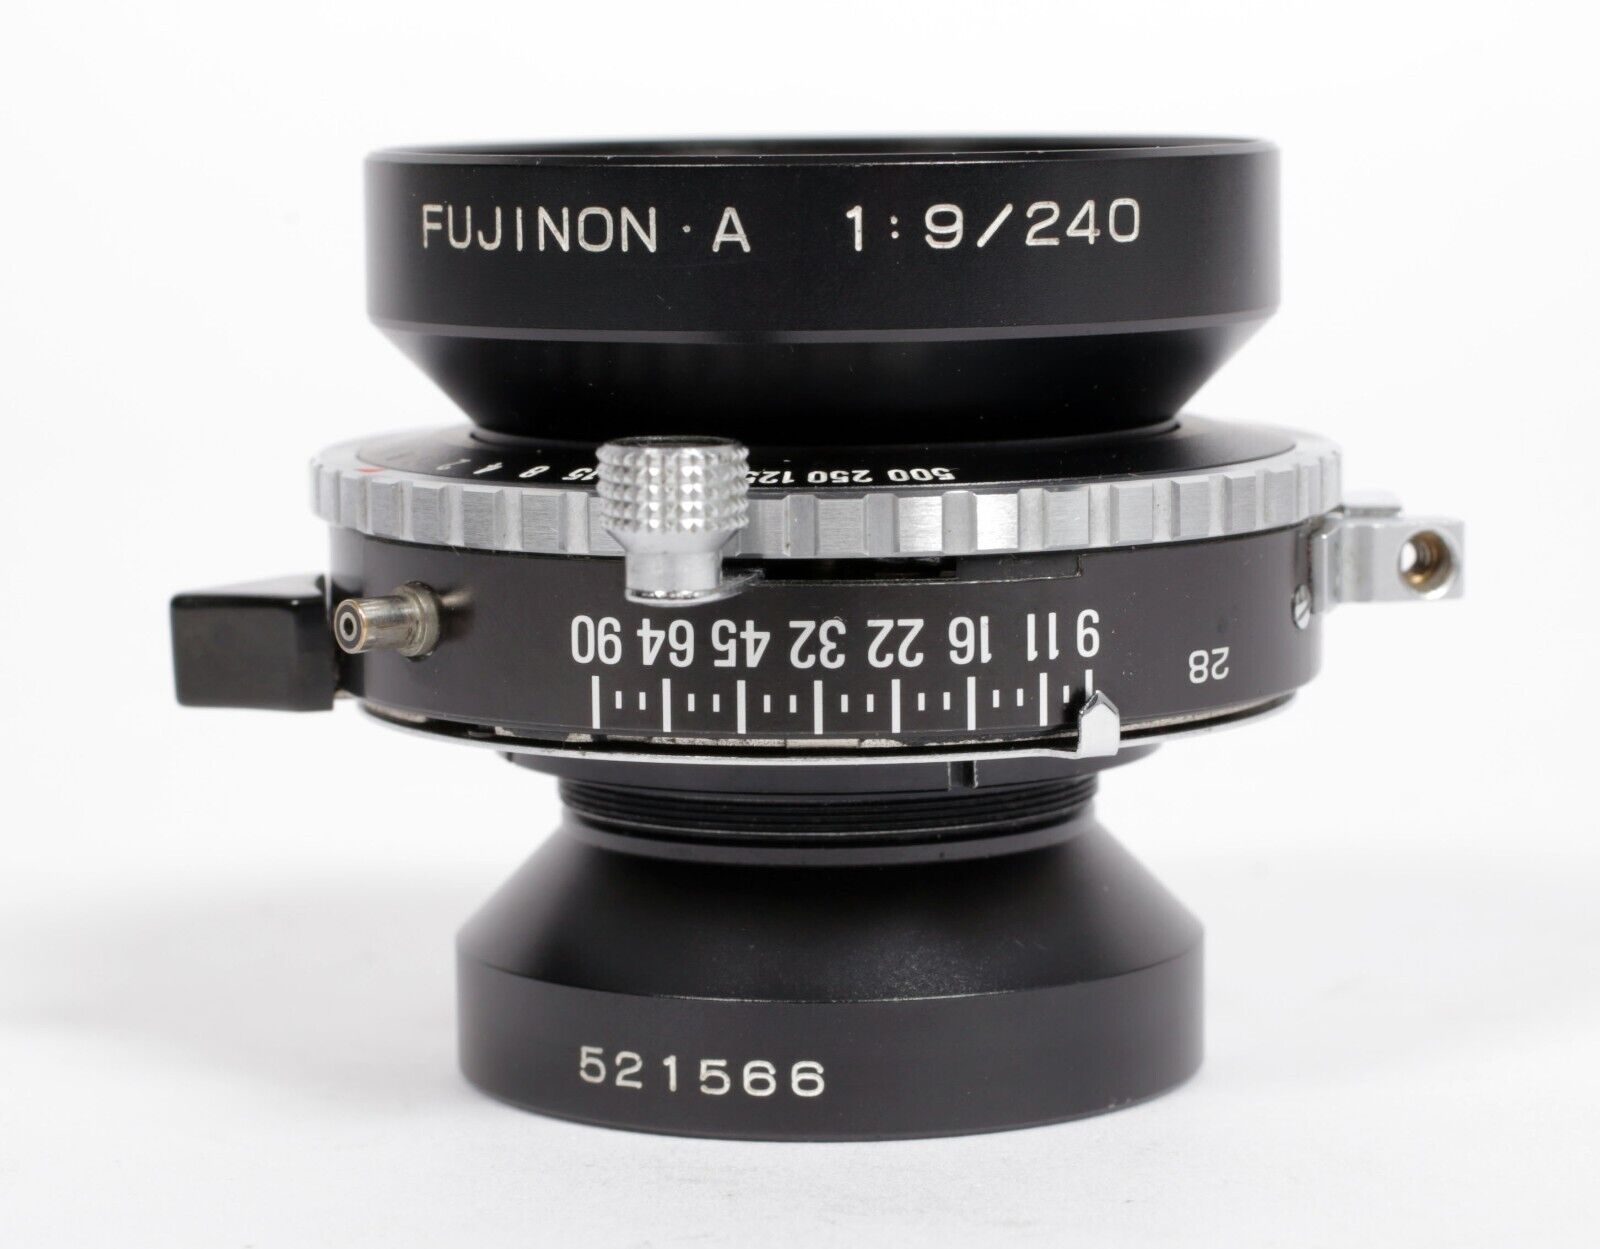 Fuji EBC A 240mm F9 Lens in Copal #0 Shutter (Covers 8X10) #566 